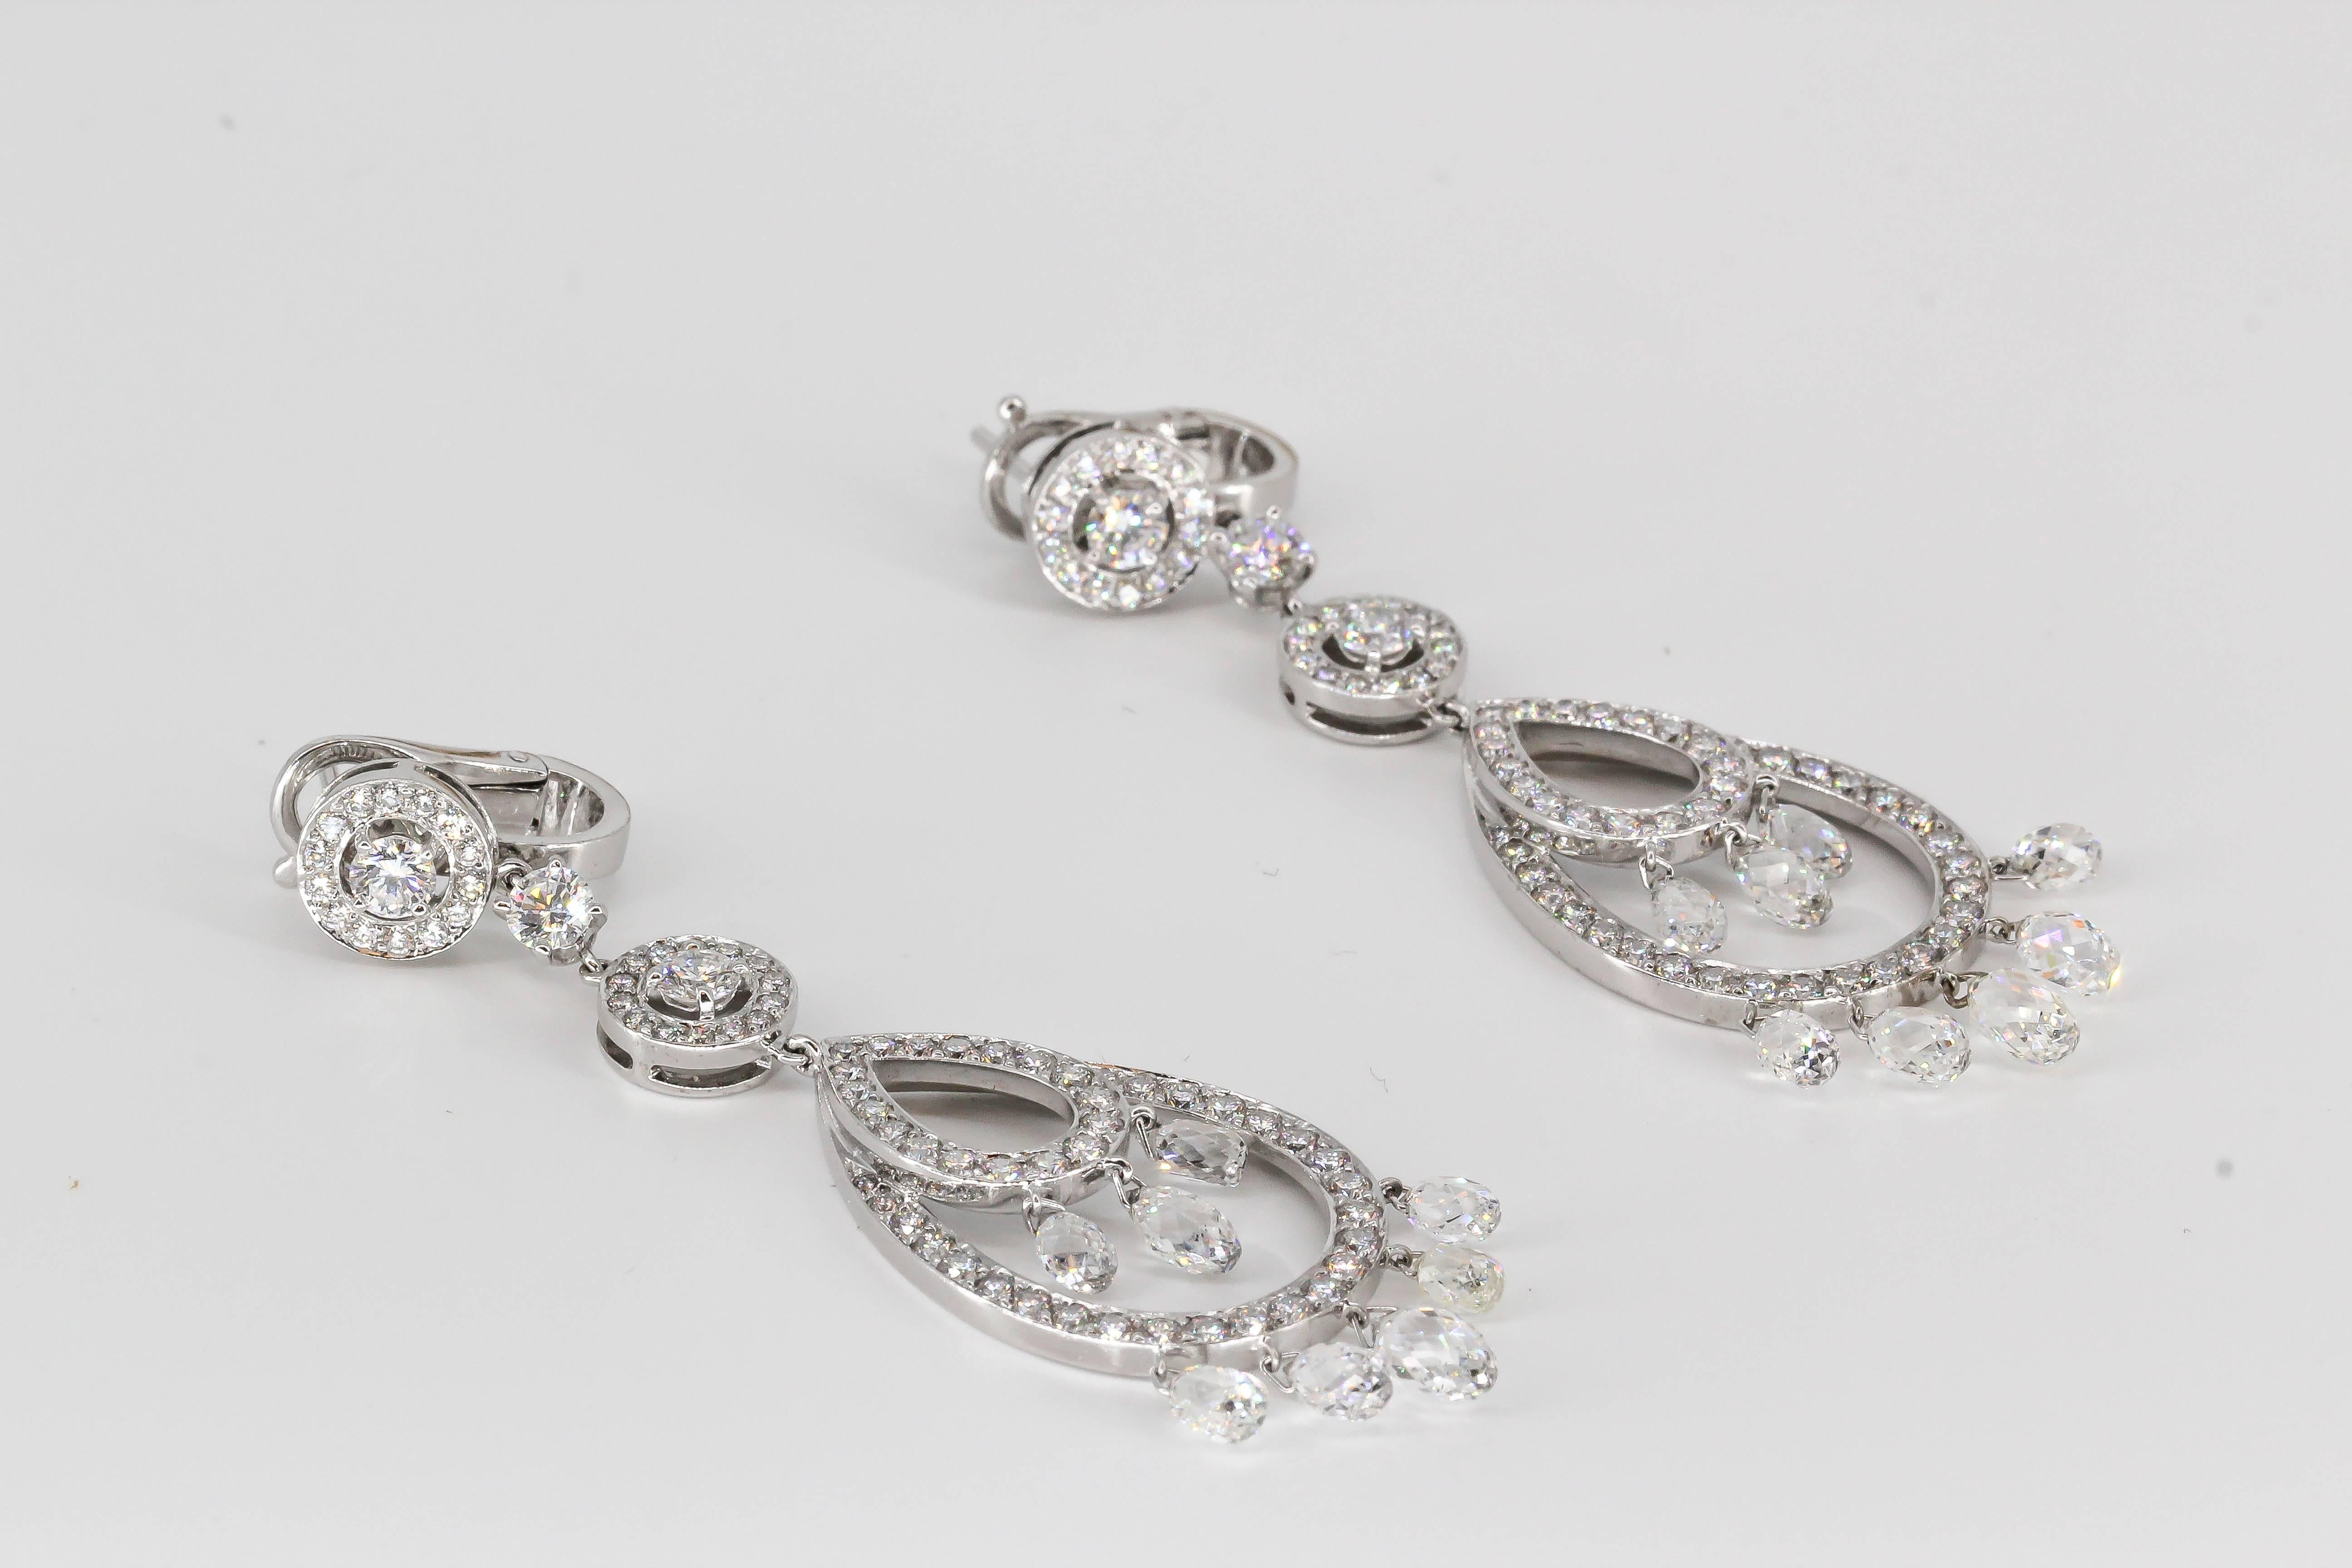 Elegant diamond and 18K white gold pendant earrings from the 